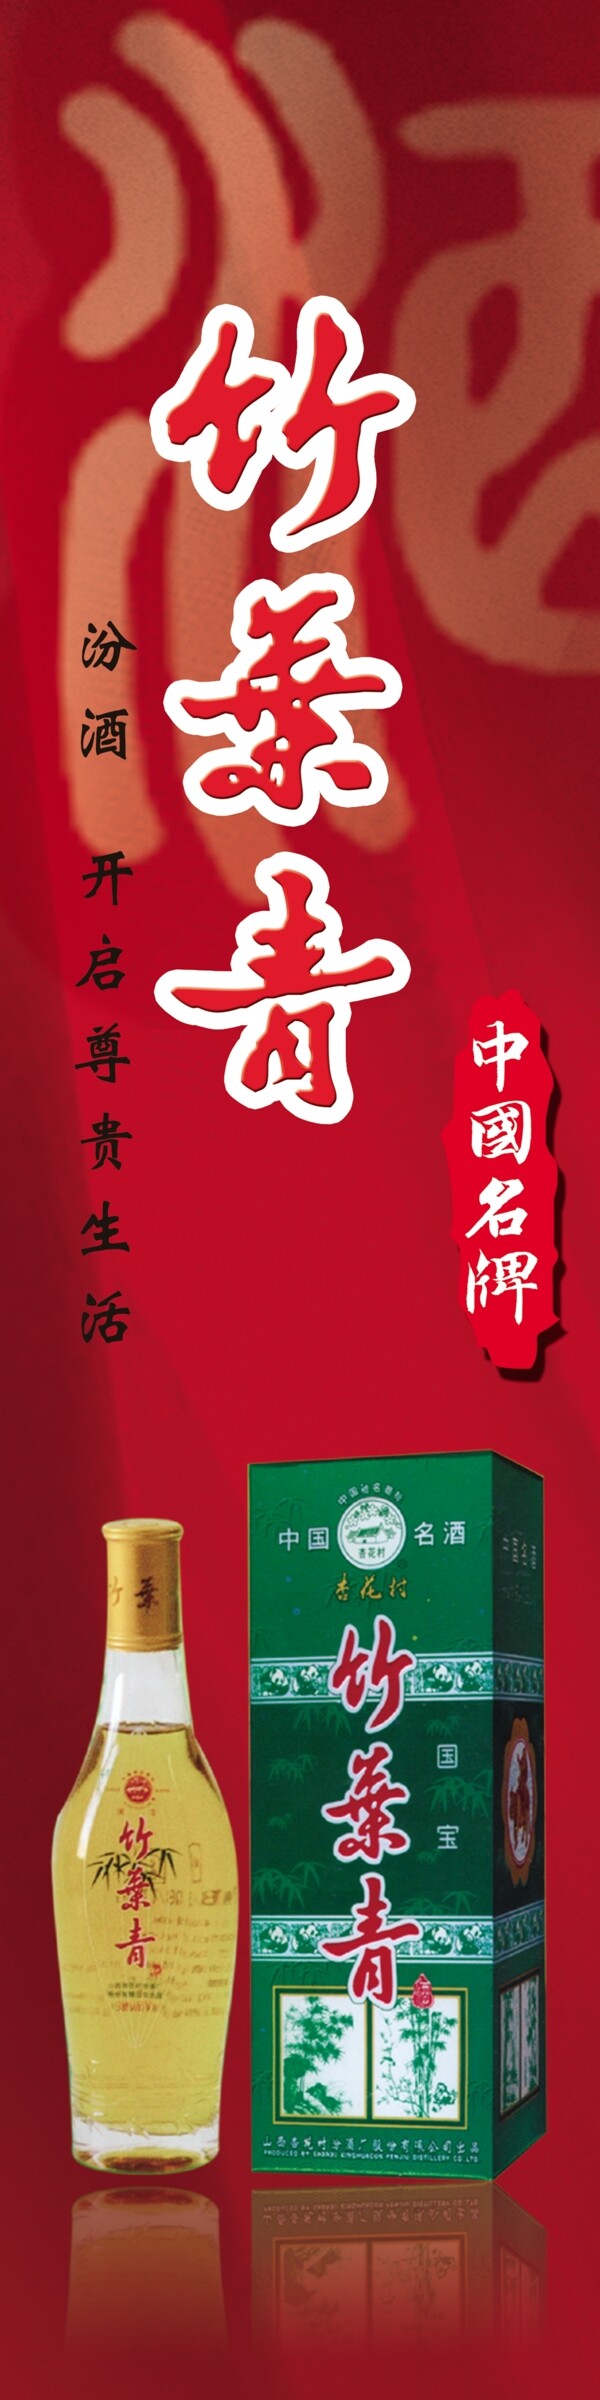 竹叶青酒广告图片